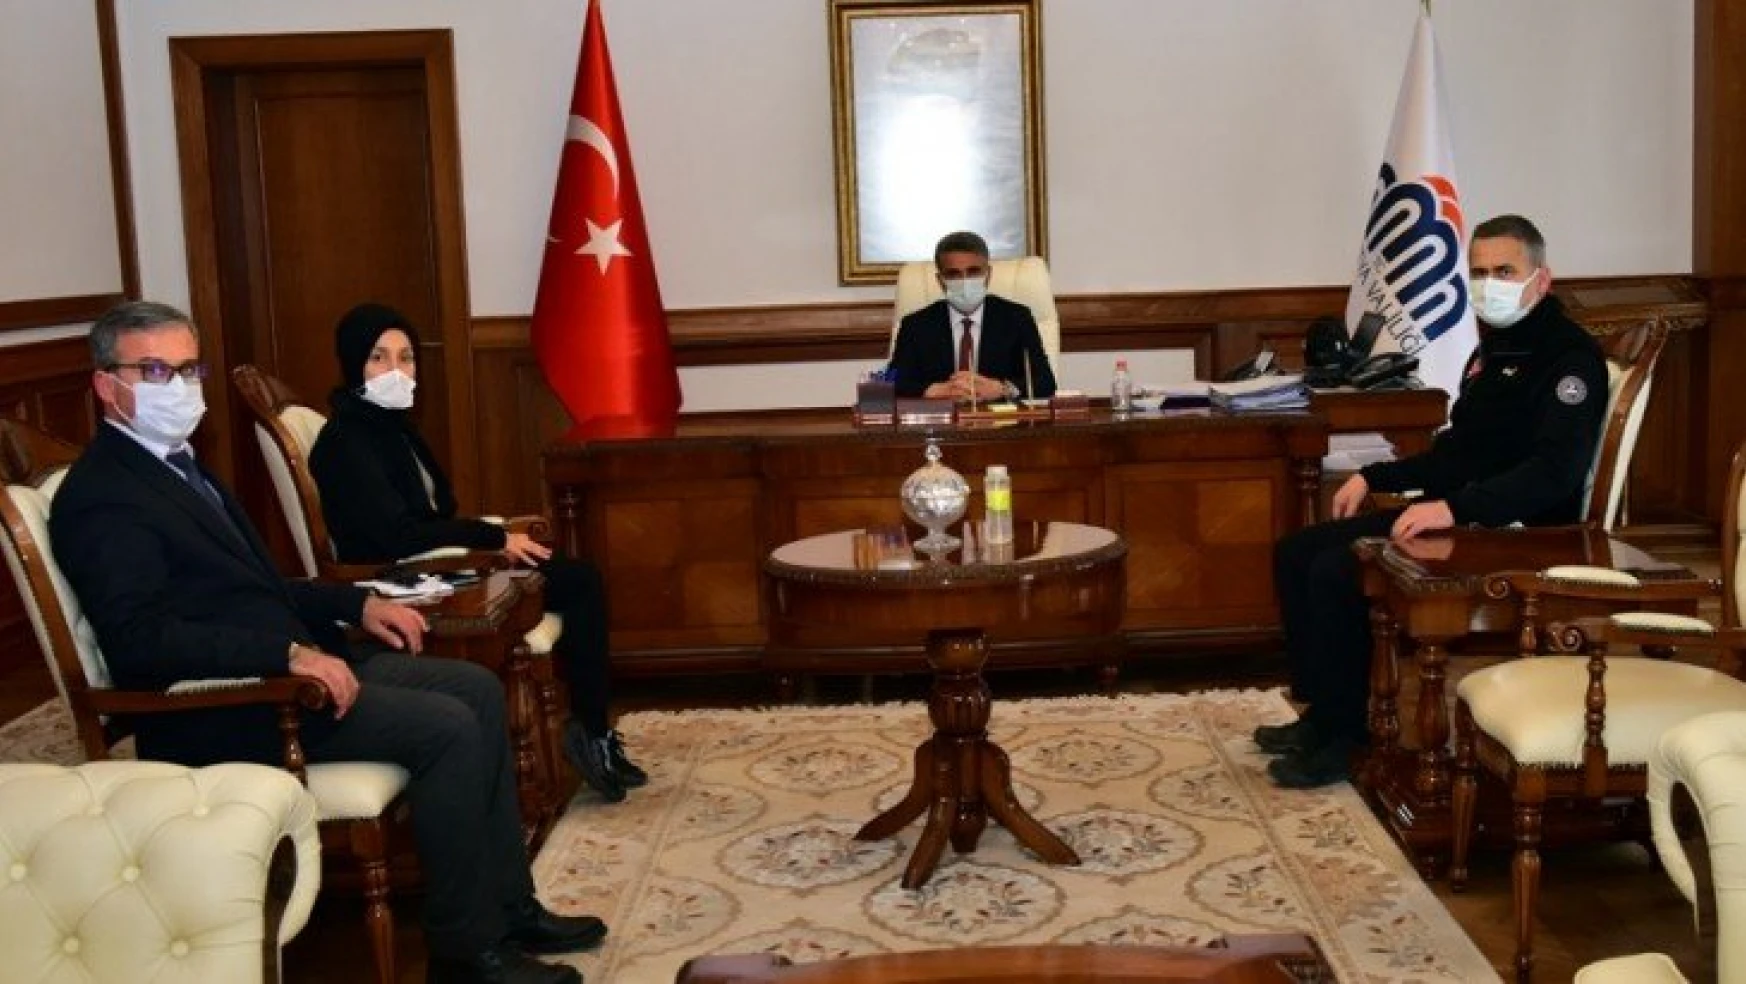 AFAD İyileştirme Daire Başkanı Mustafa Esin, Vali Aydın Baruş'u Ziyaret Etti